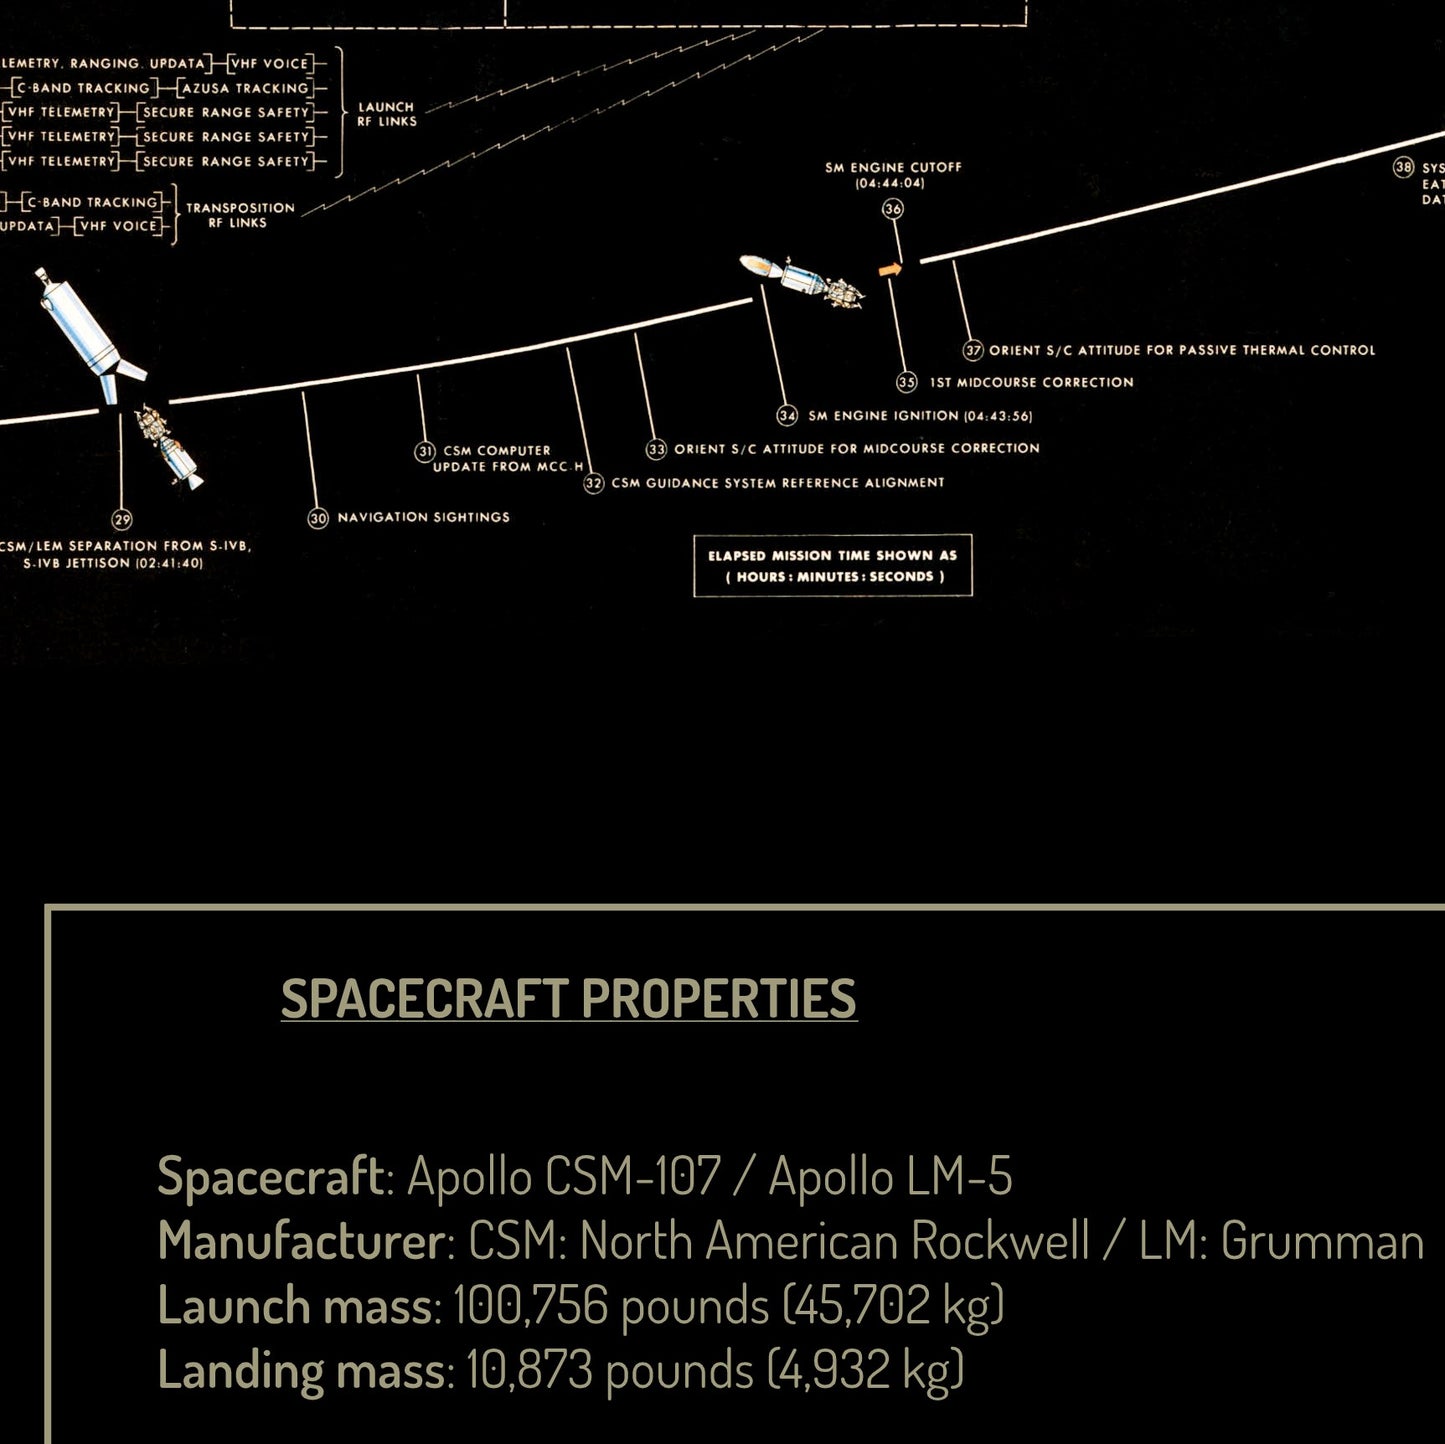 Poster de la carte d'atterrissage lunaire d'Apollo (classique remasterisée, en anglais)